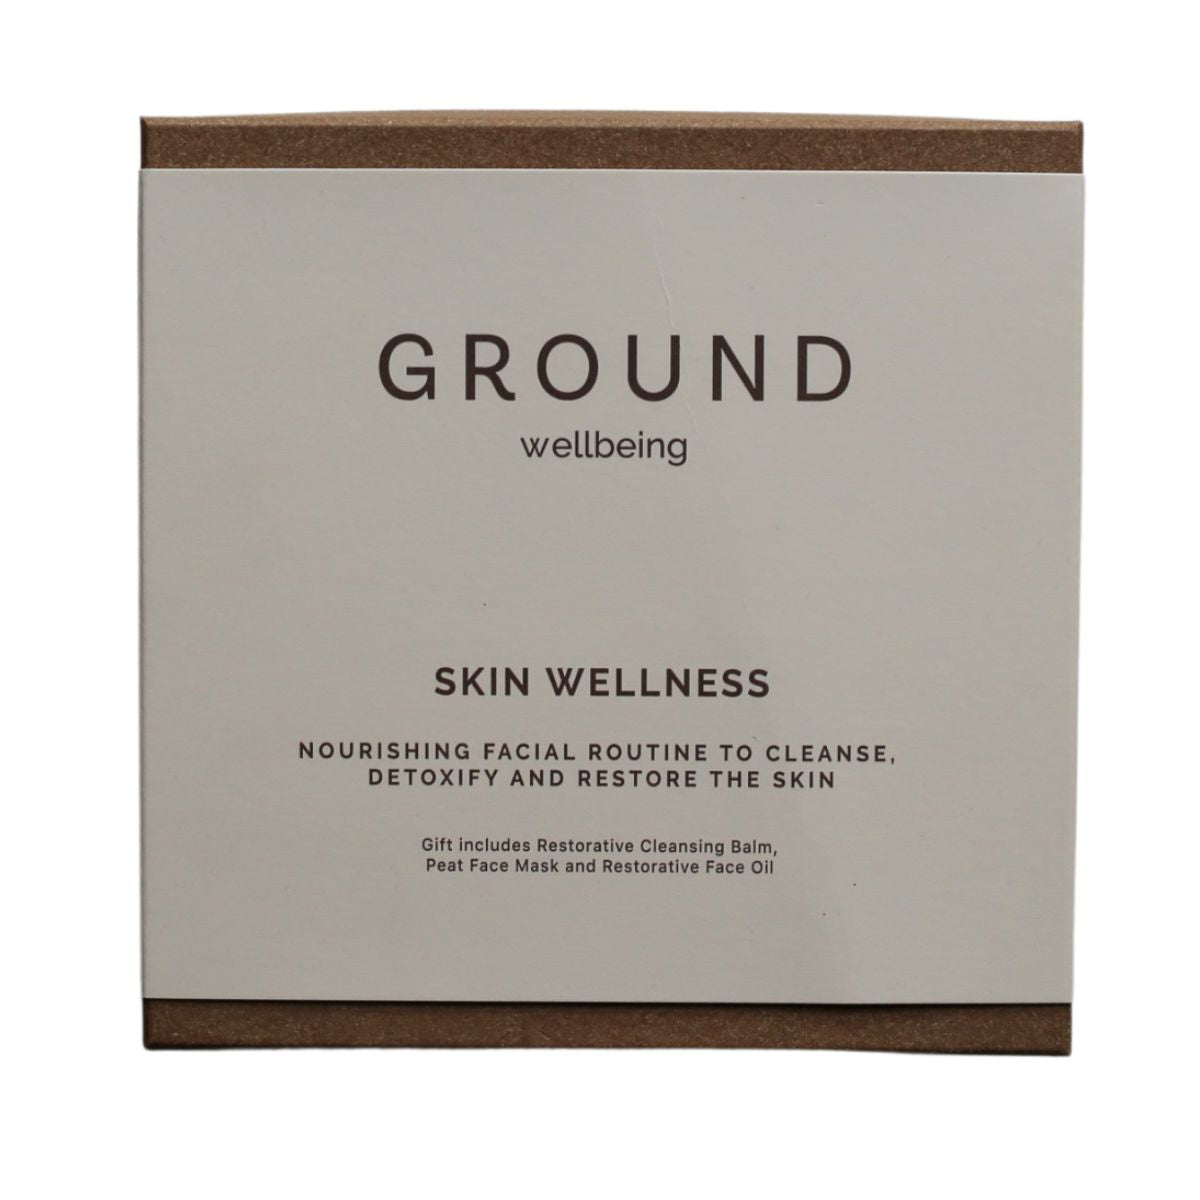 GROUND Skin Wellness Gift Box.